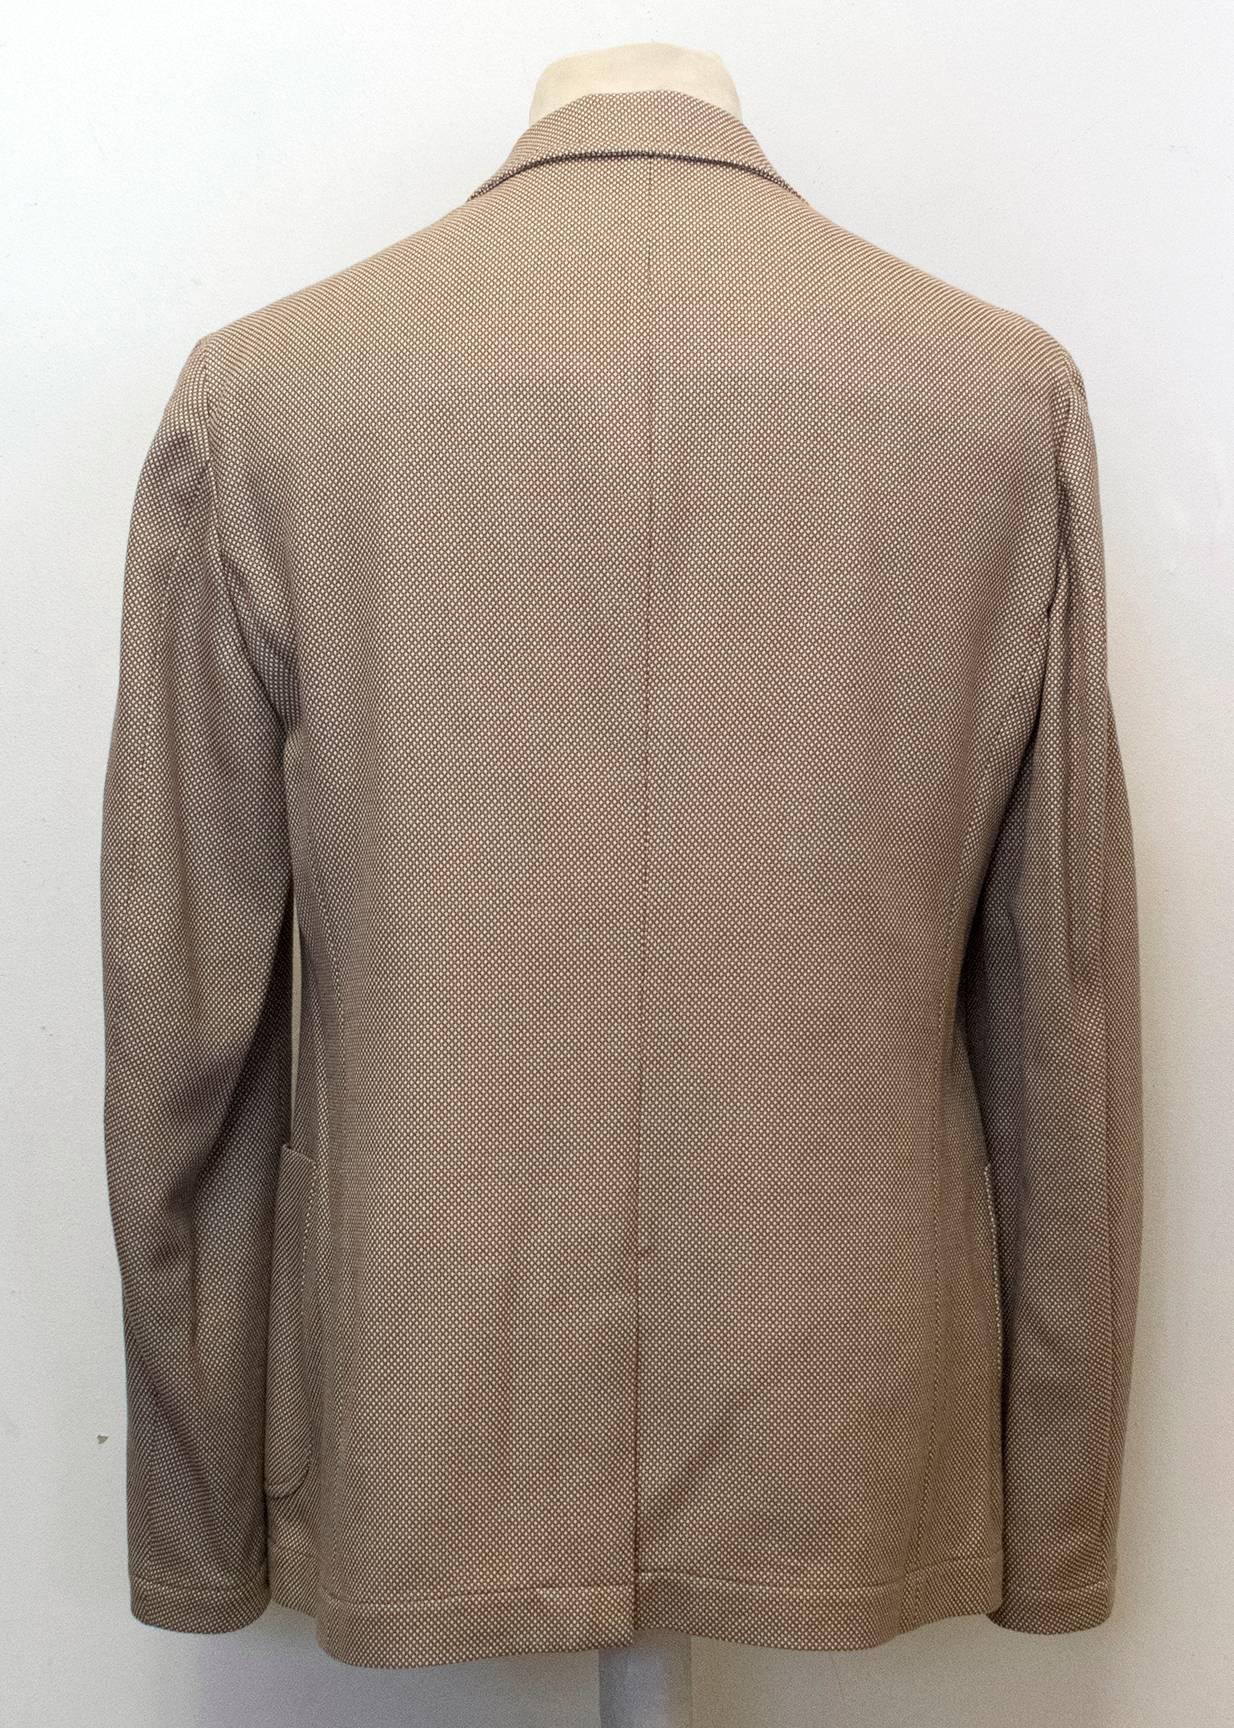 Alexander McQueen Men's Brown Tweed Relaxed Fit Blazer  For Sale 2